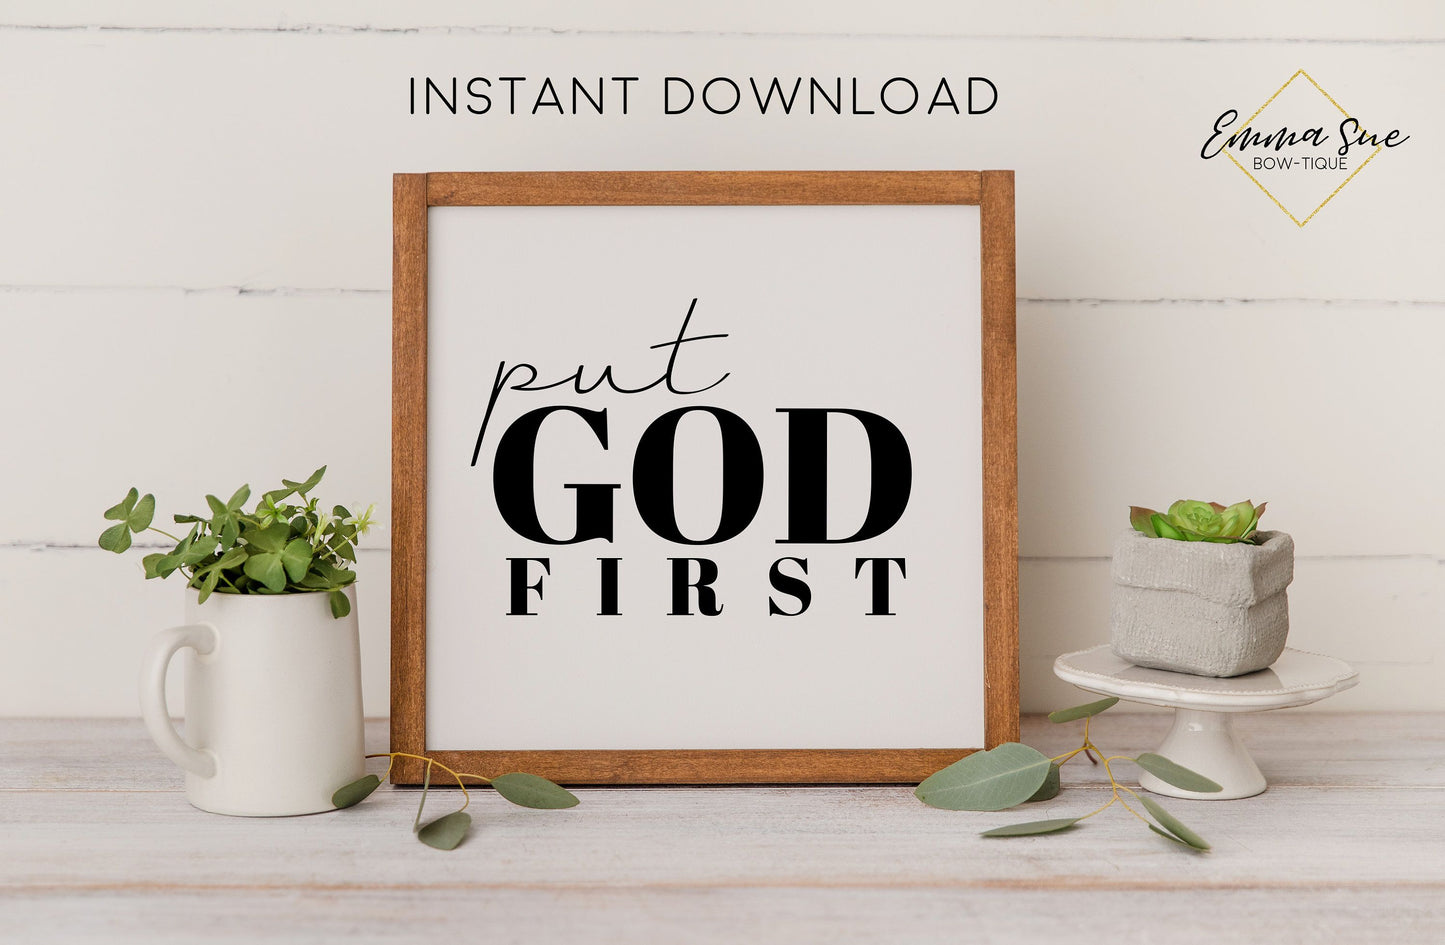 Put God first - Worship Faith Christian Farmhouse Printable Art Sign Digital File